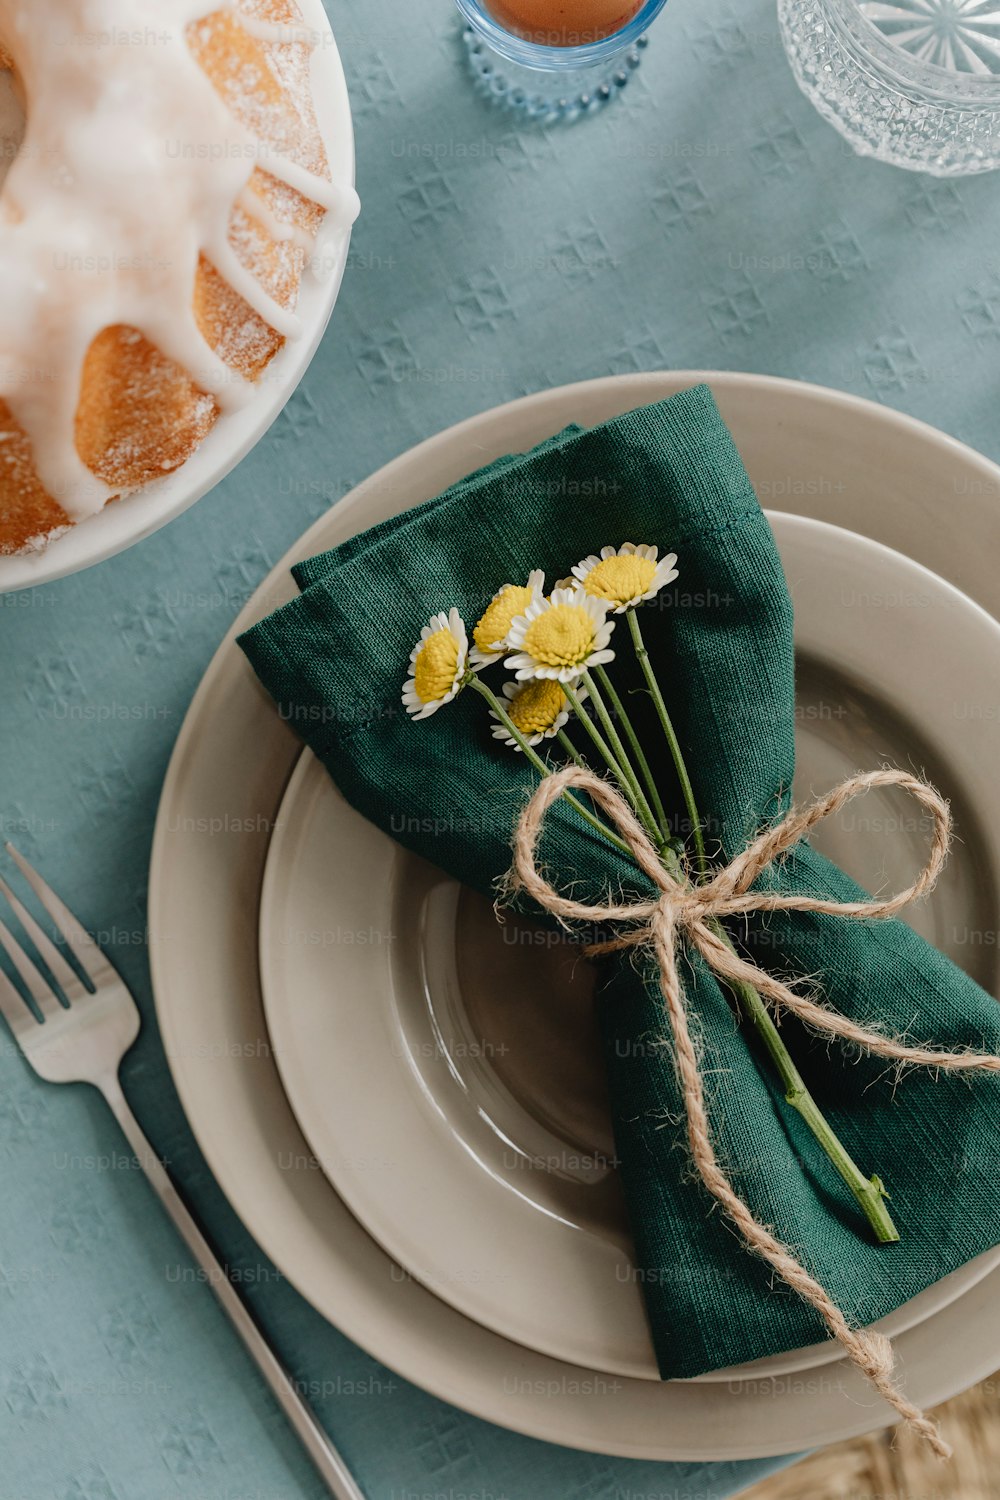 un plato con una servilleta y algunas flores